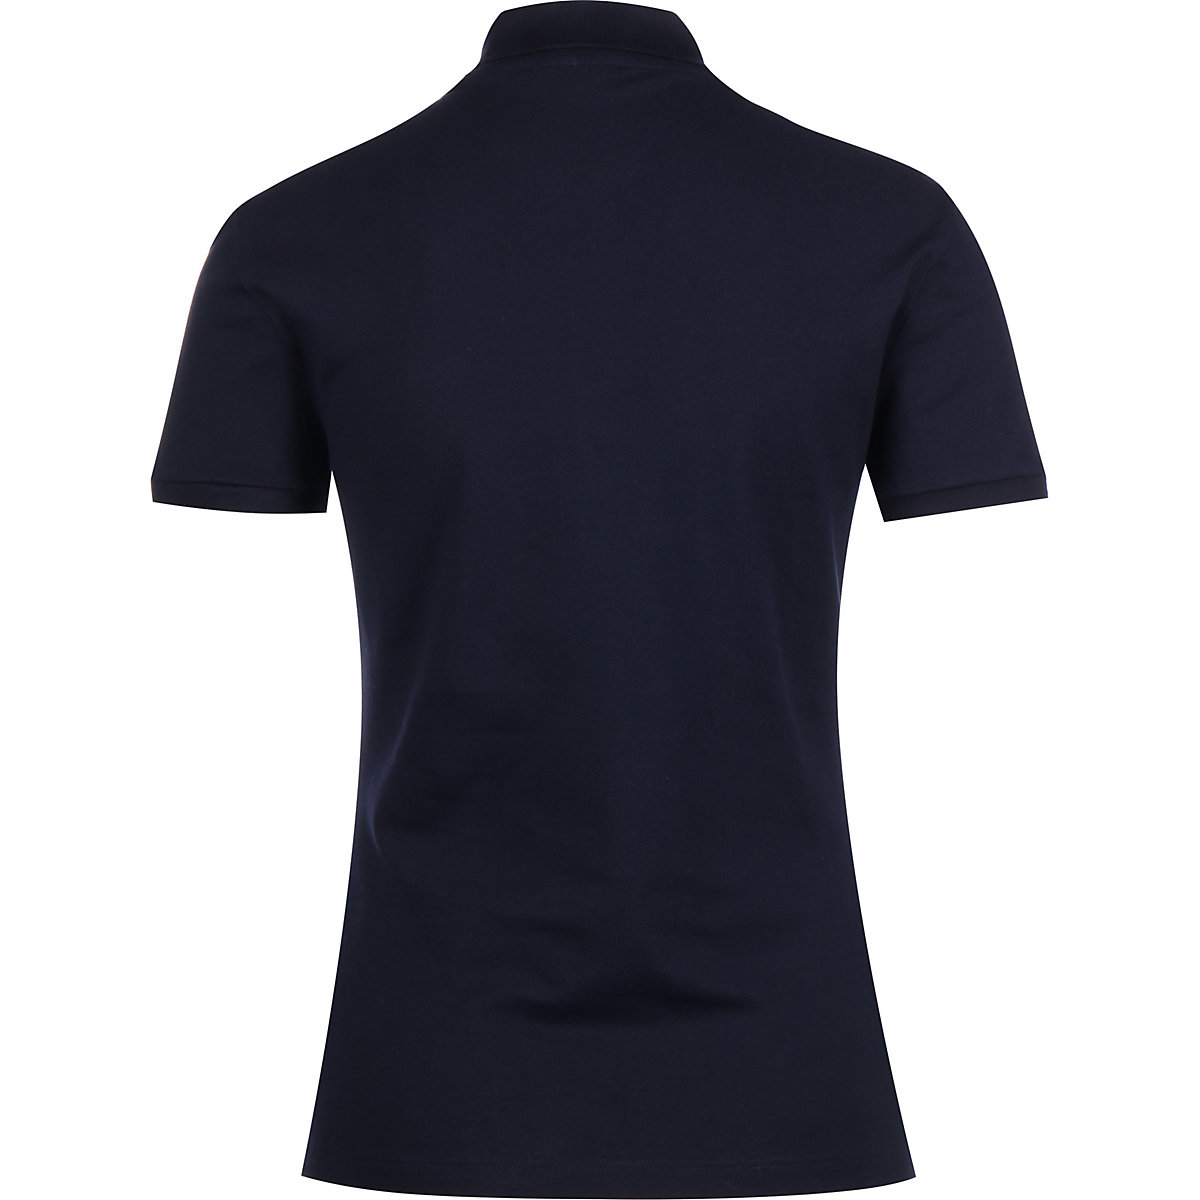 LACOSTE Lacoste Polo Sportswear Poloshirts blau YN8317